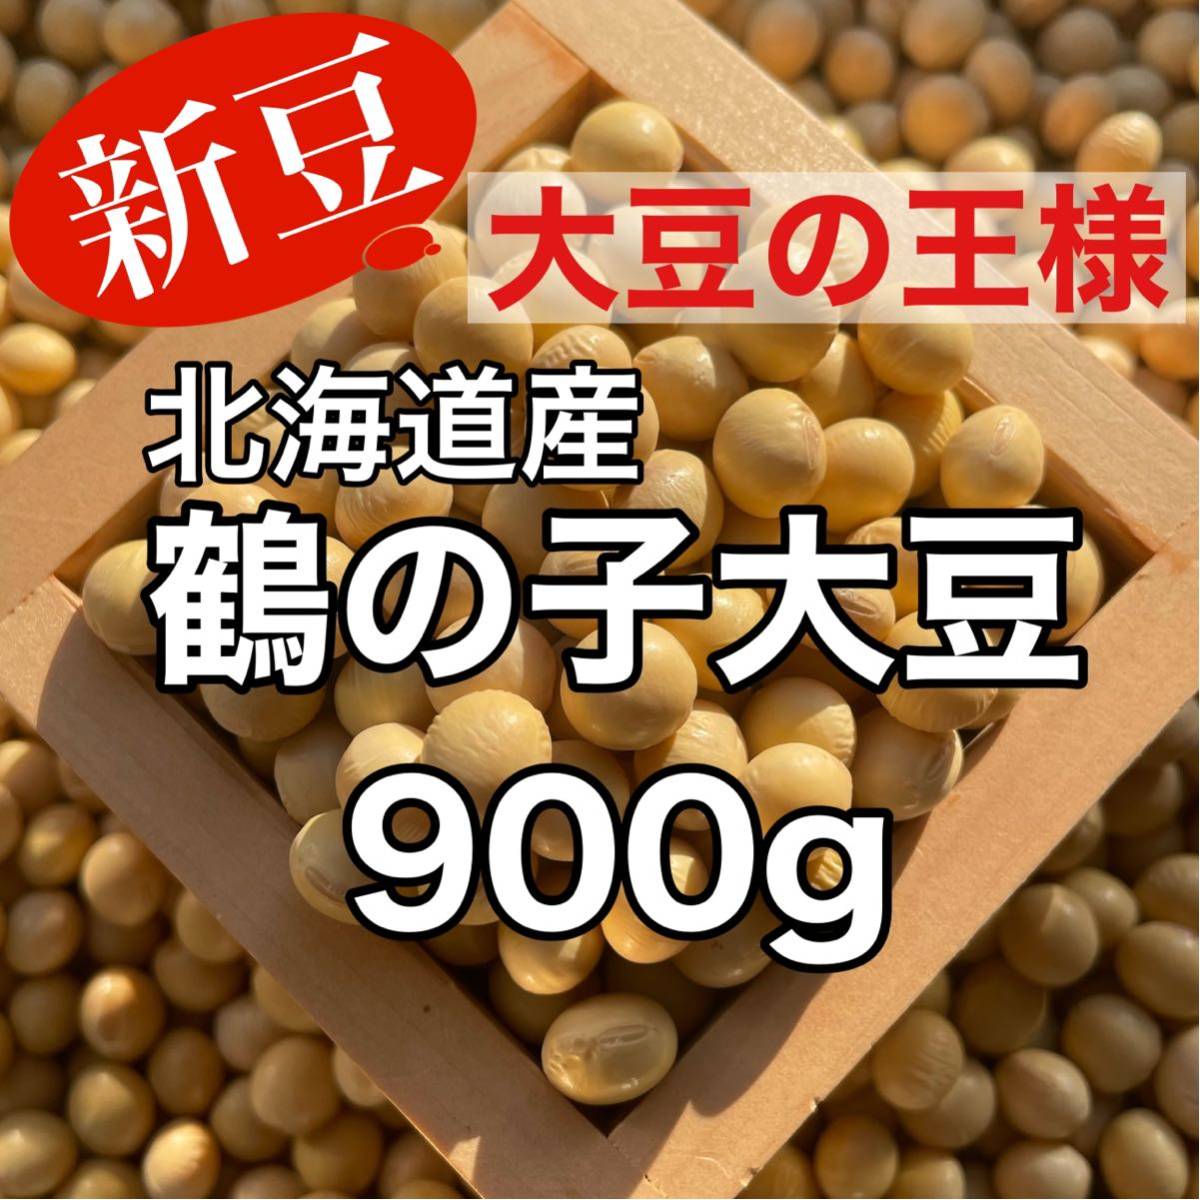 【新豆】北海道産 鶴の子大豆 900g_画像1